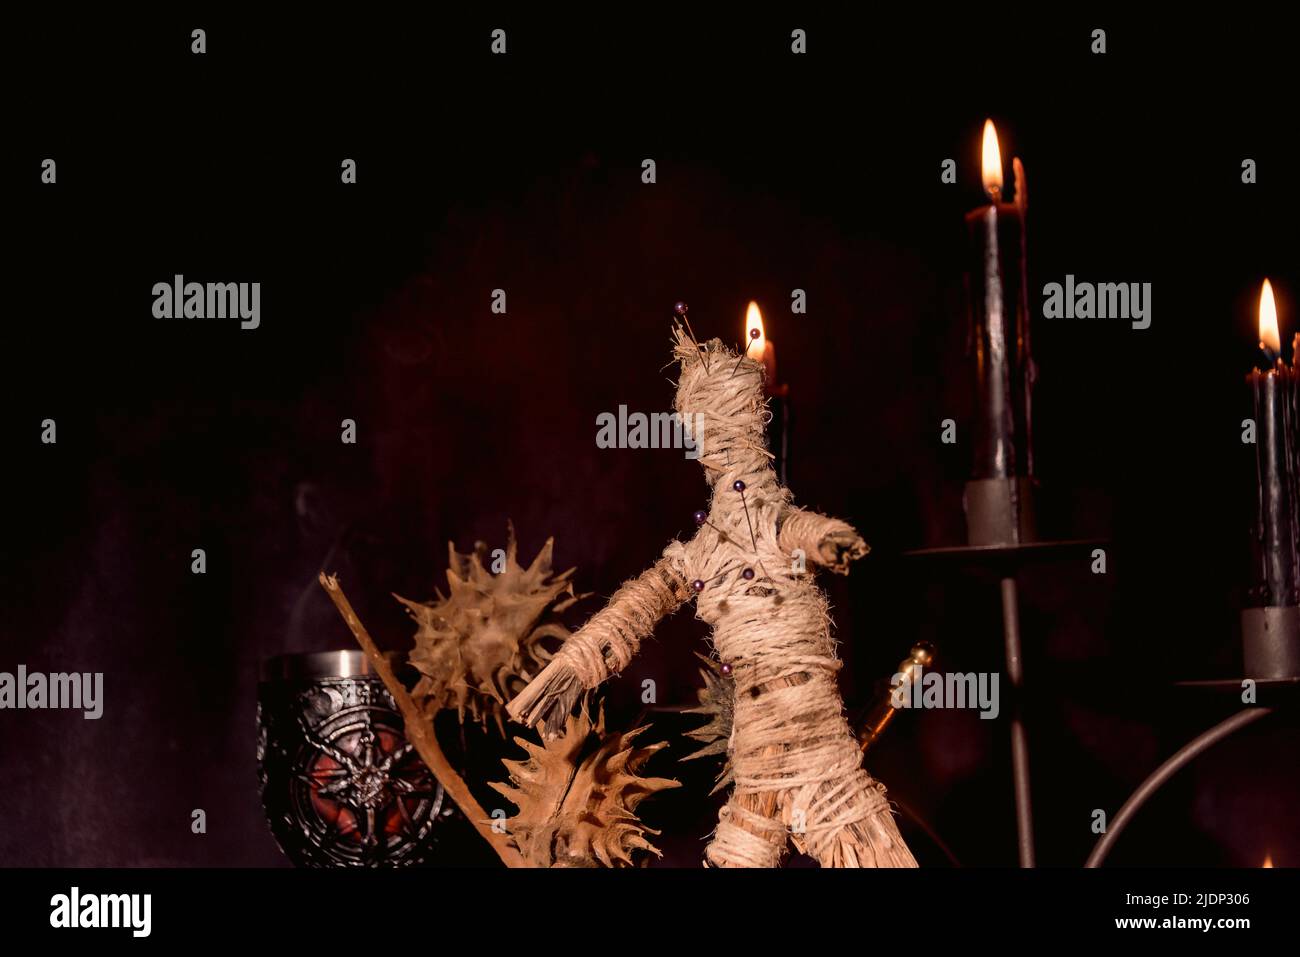 Gruselige Voodoo Puppe mit schwarzen Kerzen. Mystischer Hintergrund mit rituellen esoterischen Objekten, okkulten und halloween-Konzept. Stockfoto